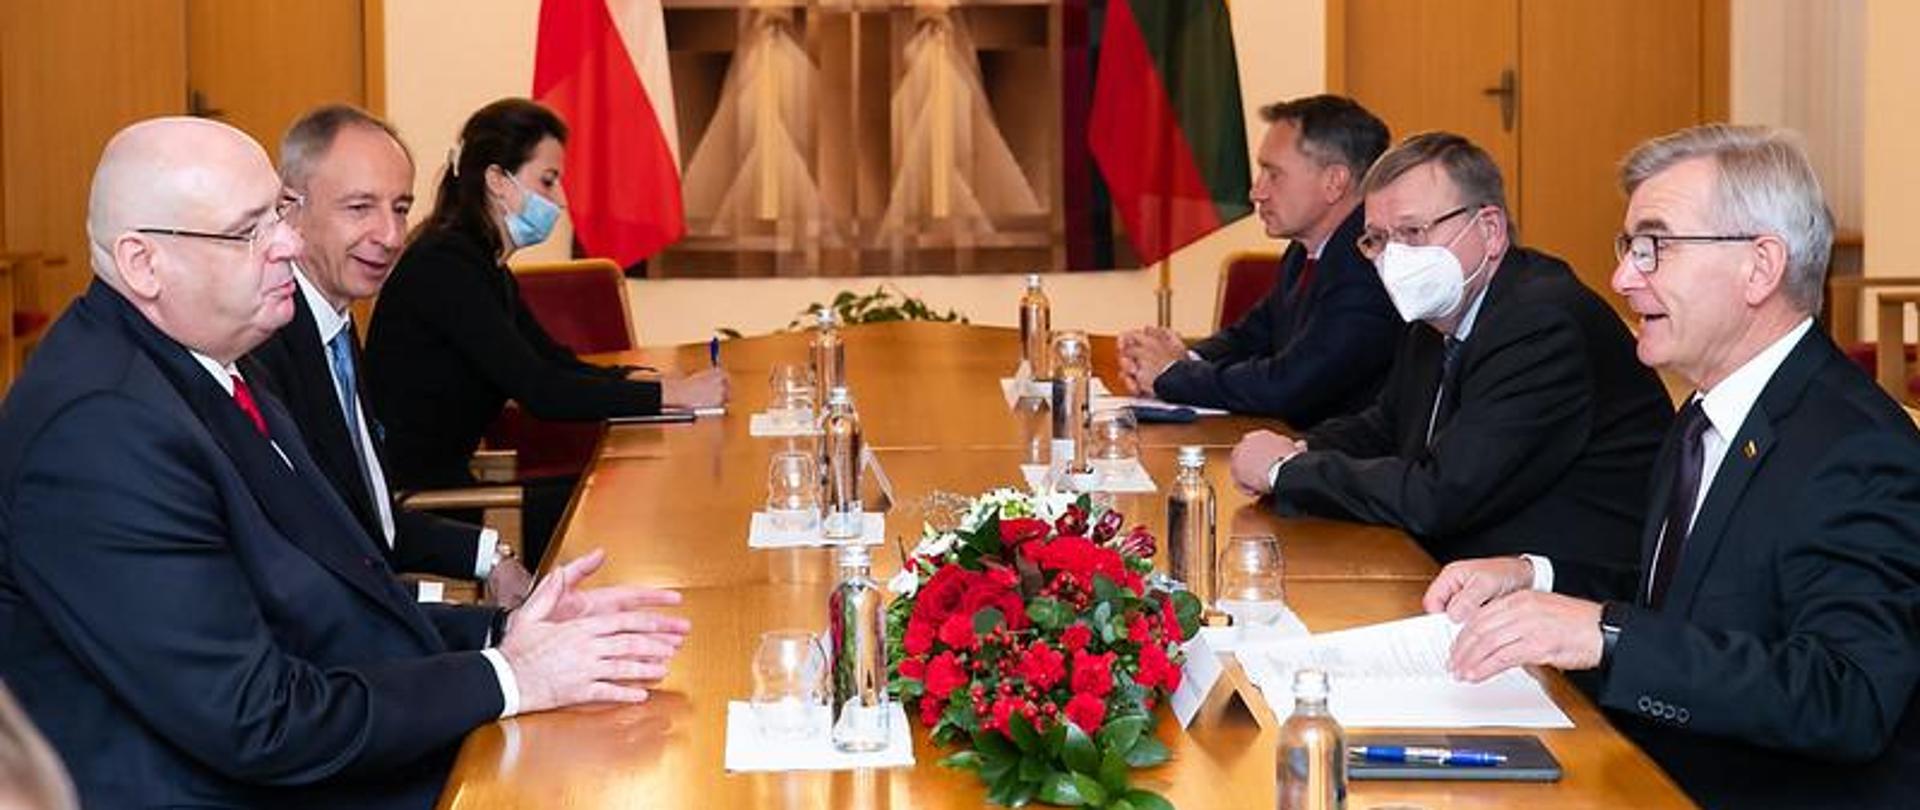 Wizyta Wicemarszałka Sejmu w Republice Litewskiej